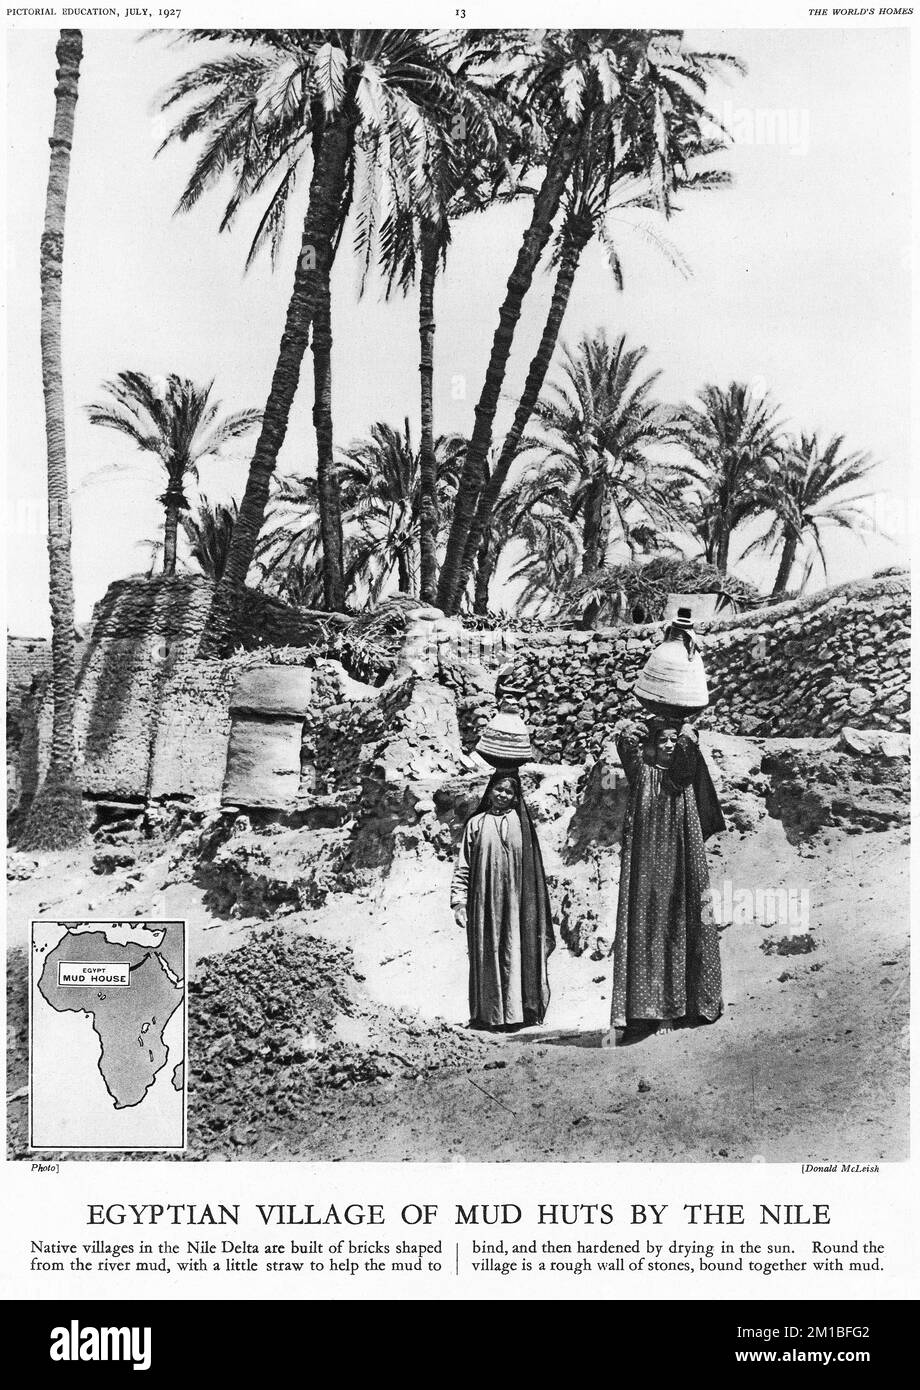 Demi-ton d'un village égyptien de huttes de boue par le Nil, d'une publication éducative, 1927 Banque D'Images